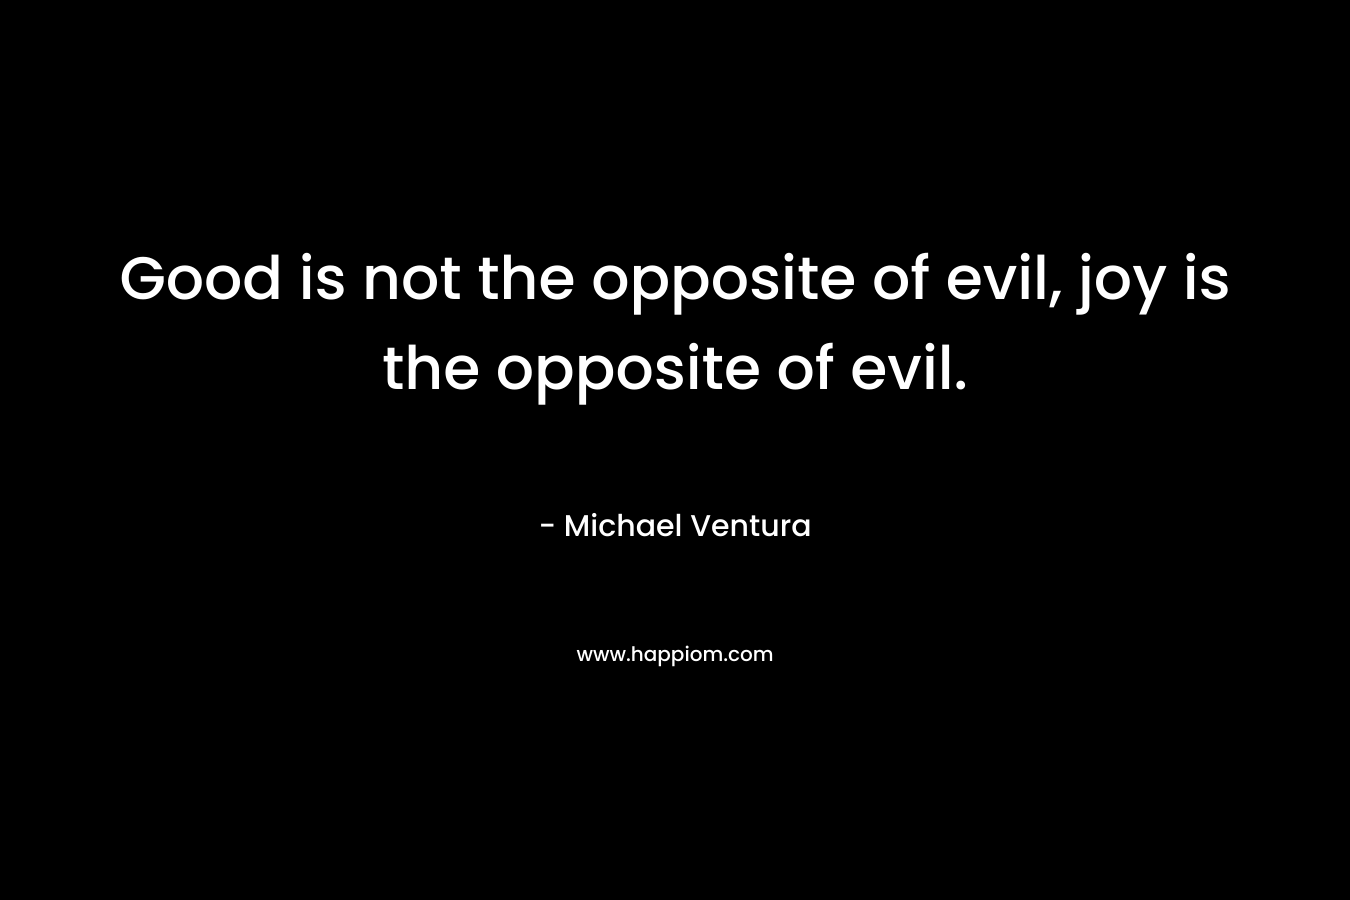 Good is not the opposite of evil, joy is the opposite of evil.